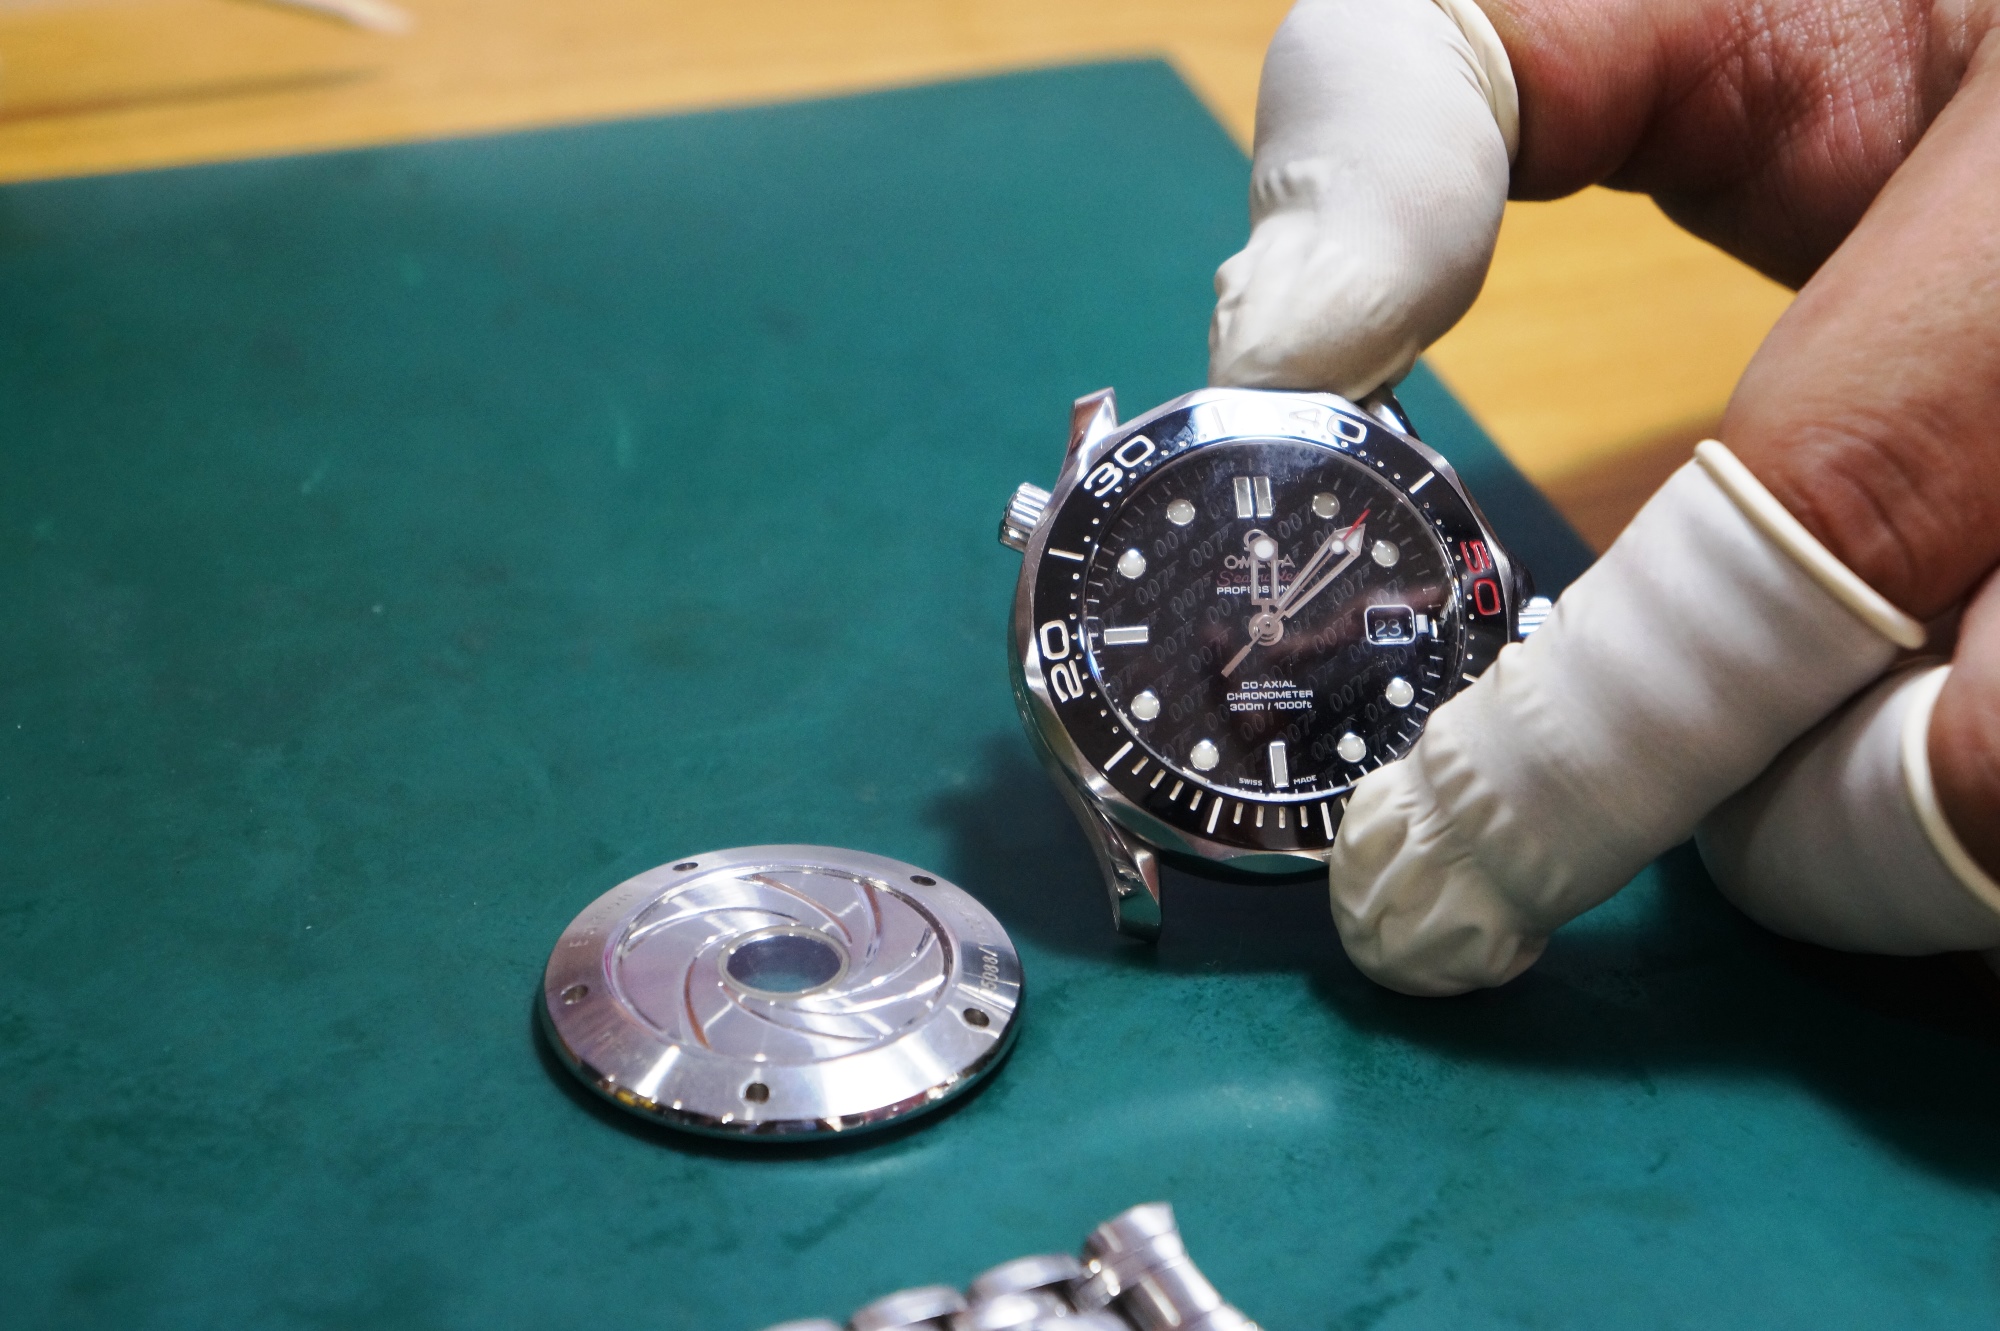 Chiếc đồng hồ Omega super fake giá 4.000 USD chỉ được phát hiện là hàng nhái khi đem đi sửa. Ảnh:KN